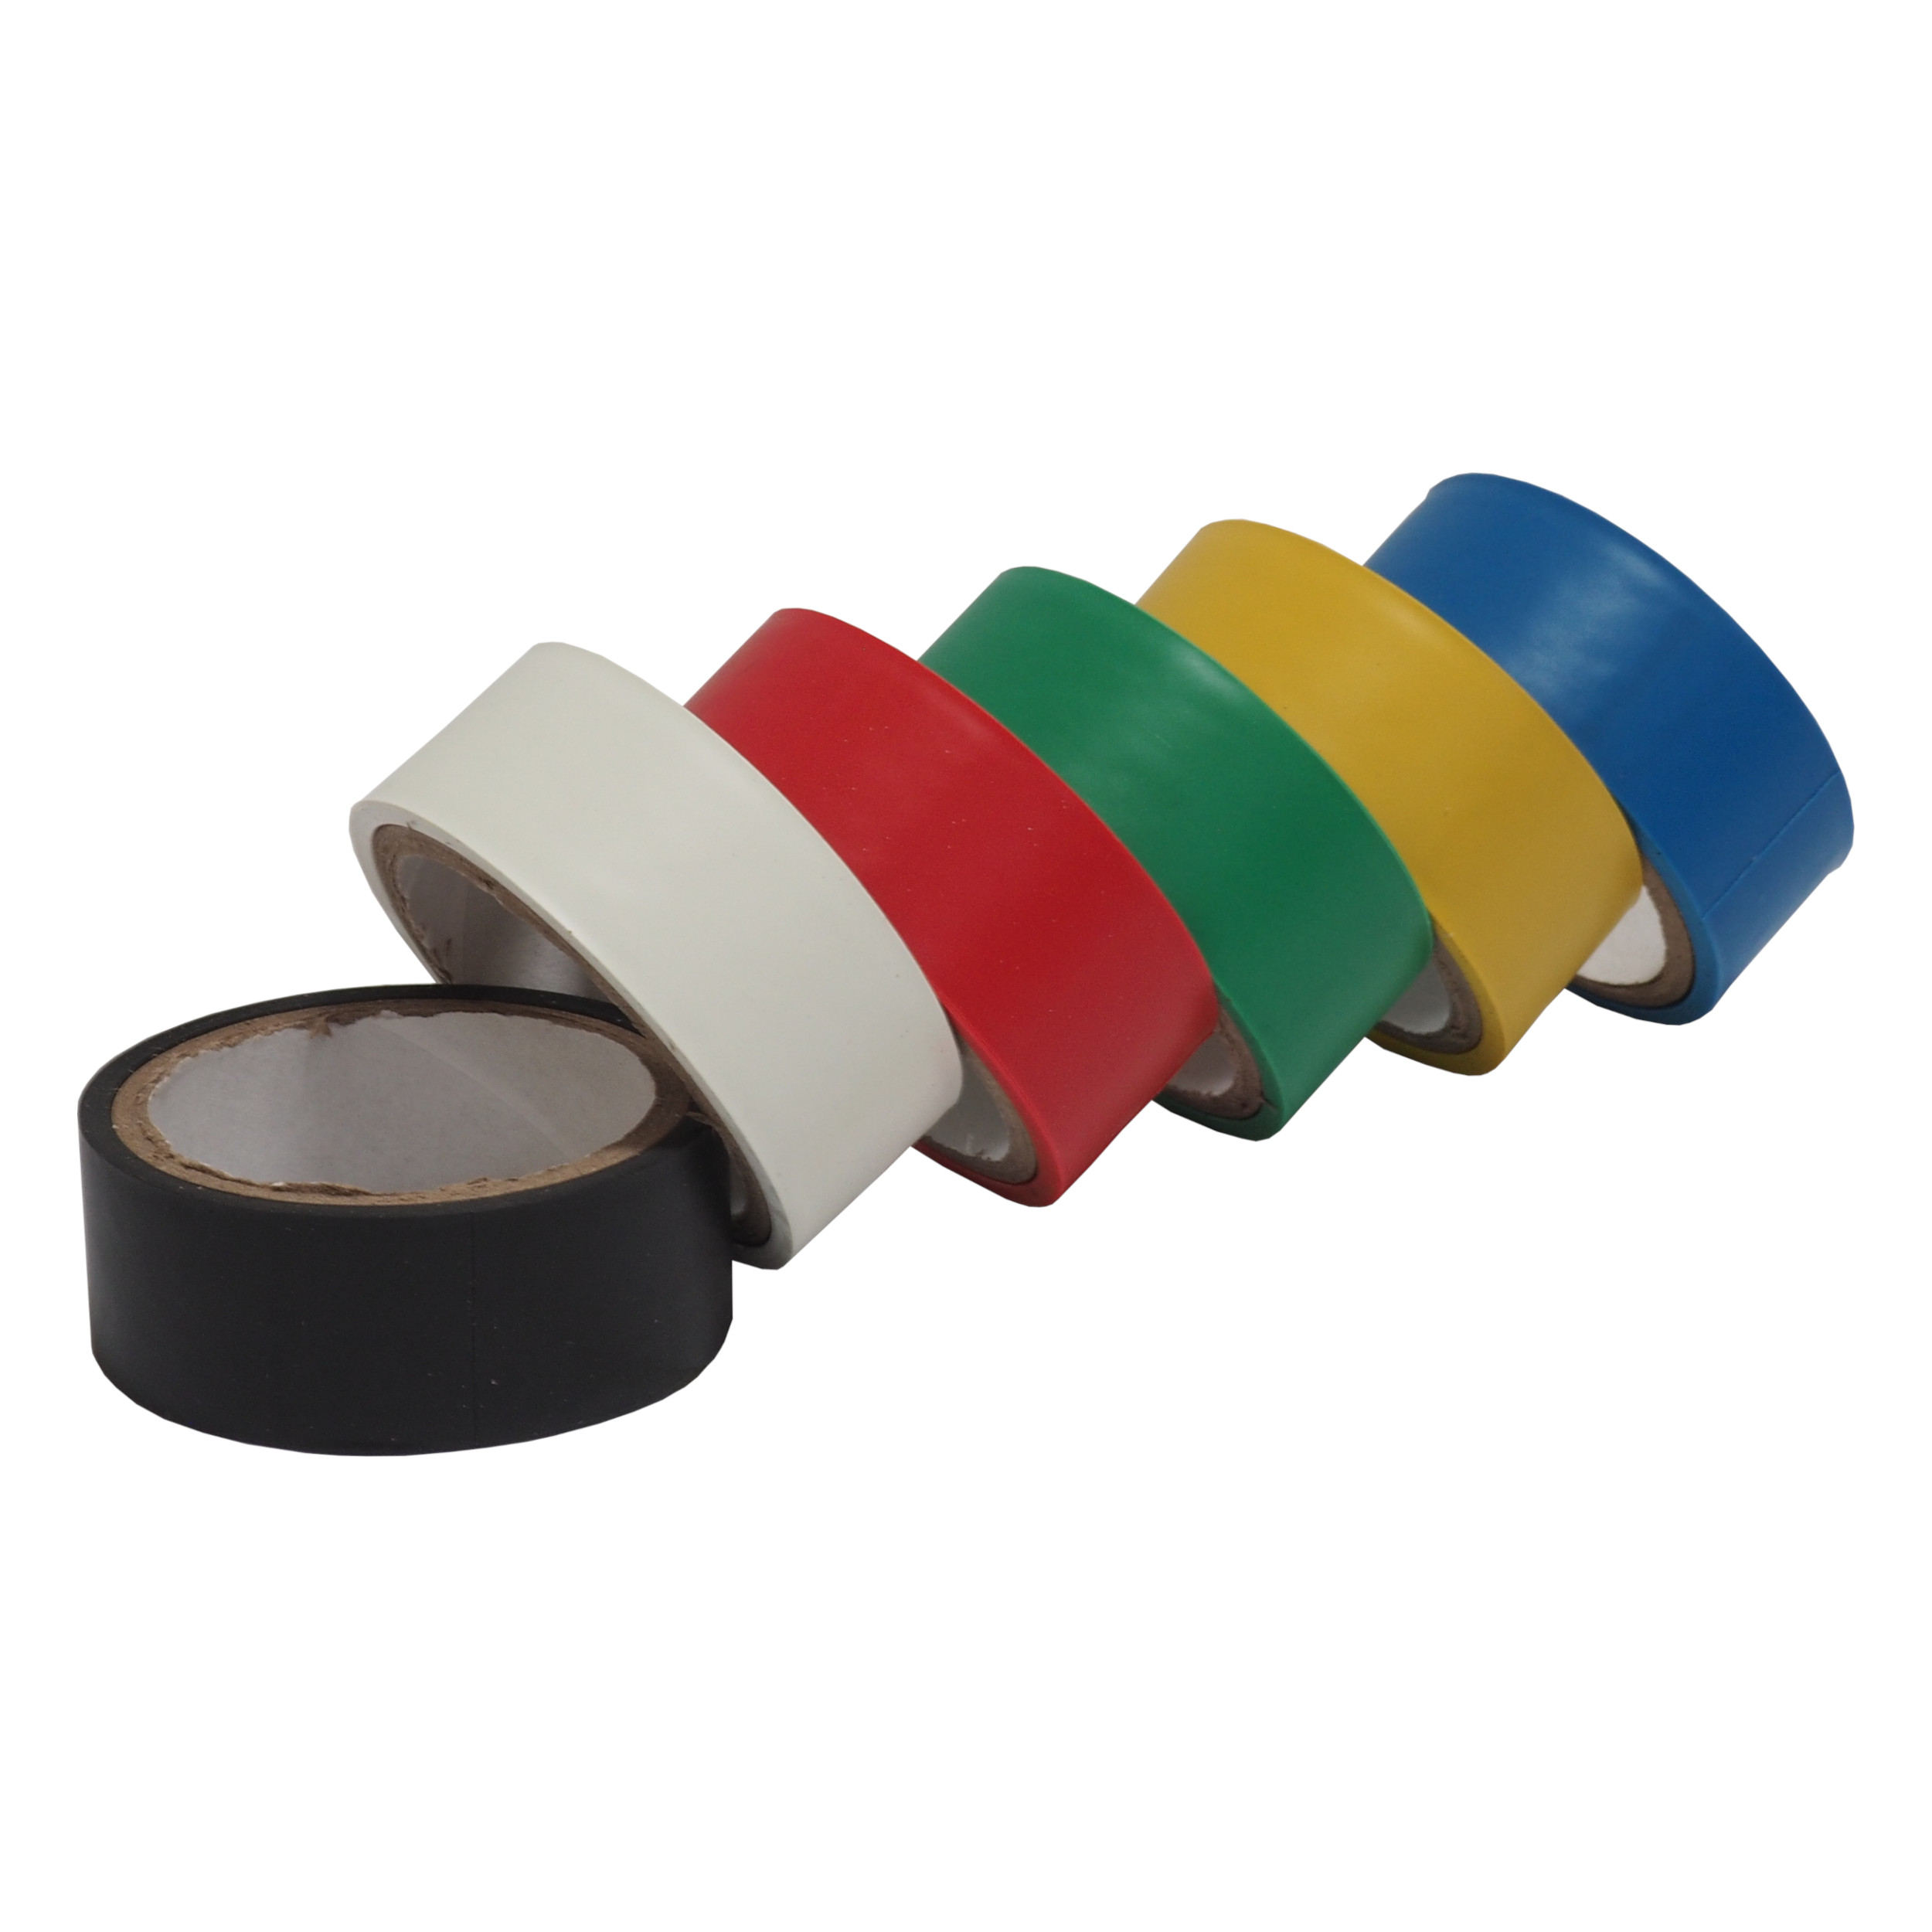 TOPTRADE páska elektroizolační, barevná, 19 x 0,13 mm x 3 m, set 6 ks 0.11 Kg TOP Sklad4 701423 1954